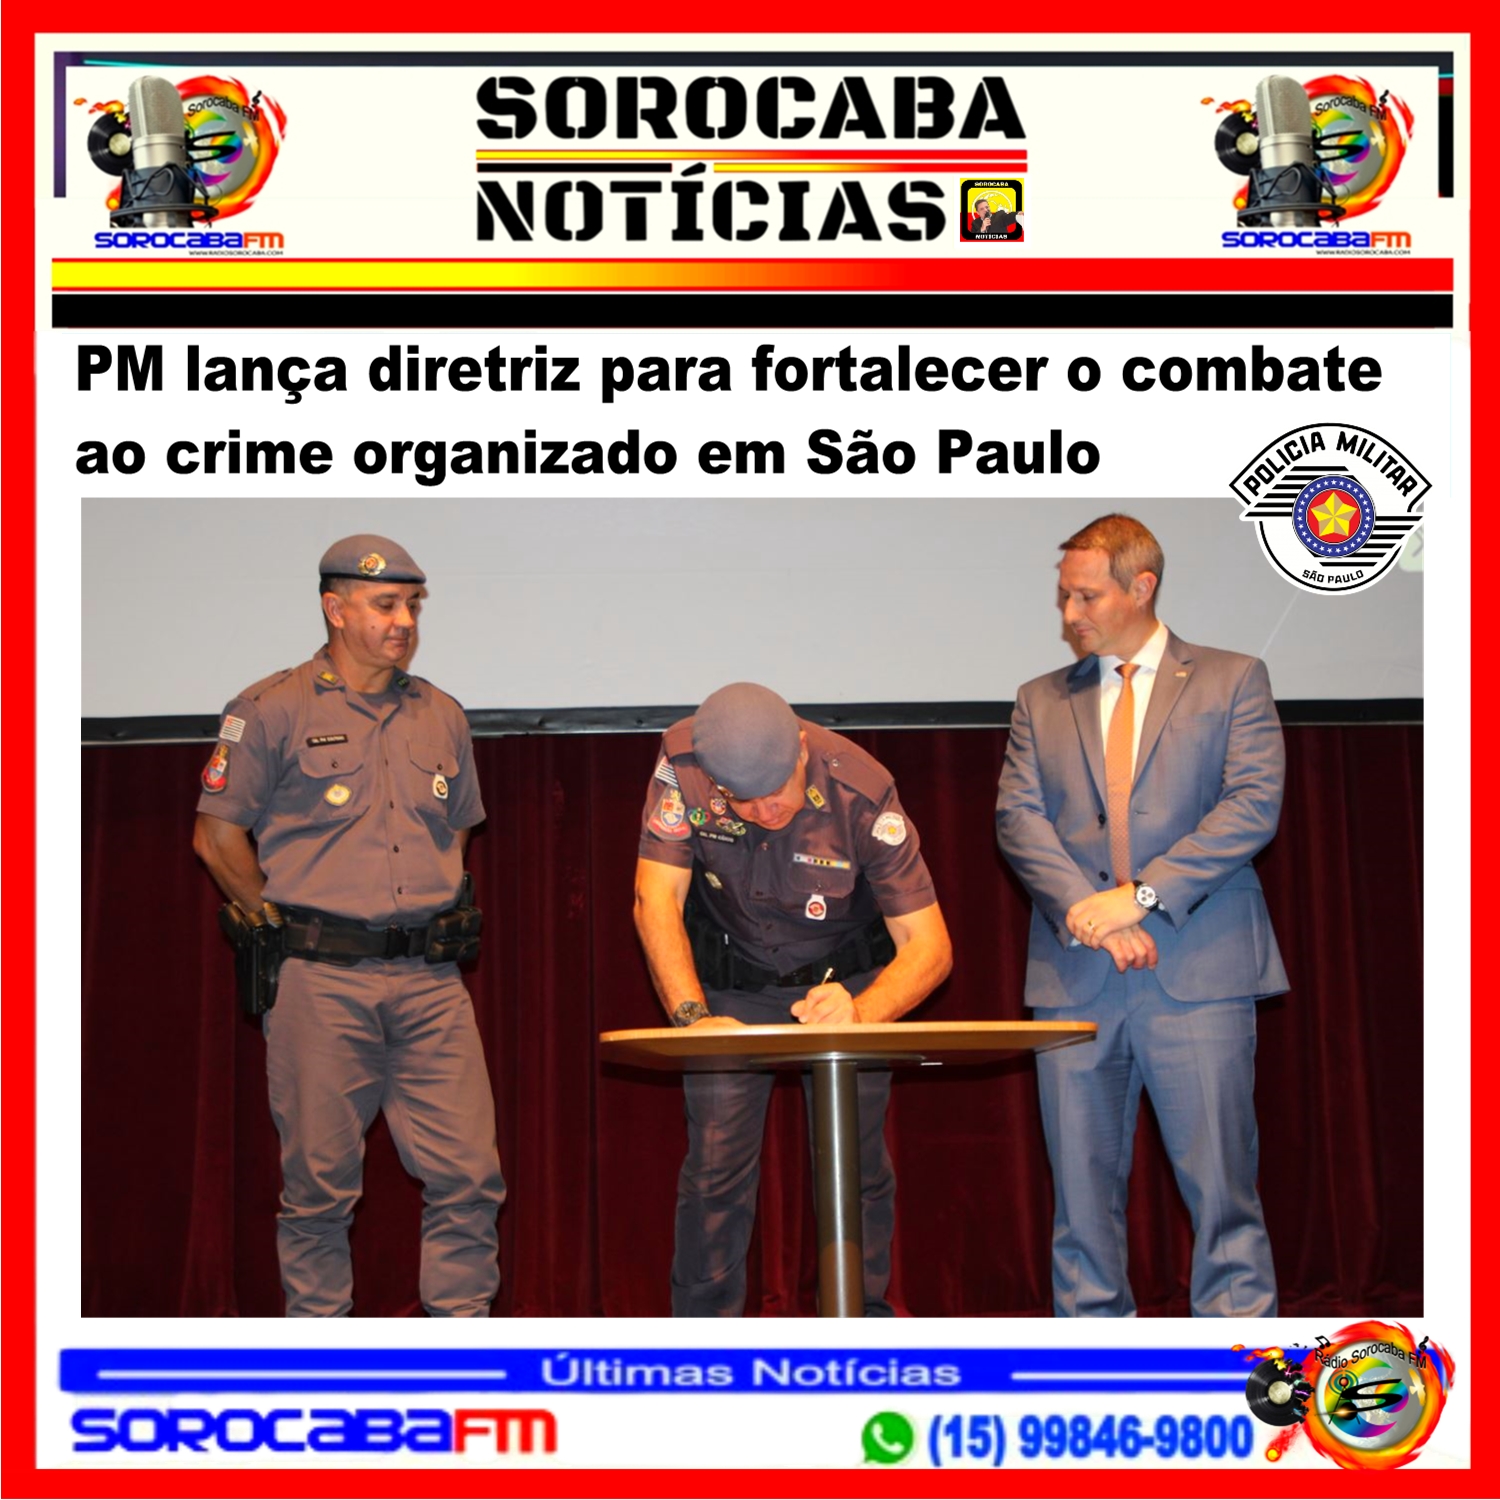 PM lança diretriz para fortalecer o combate ao crime organizado em São Paulo